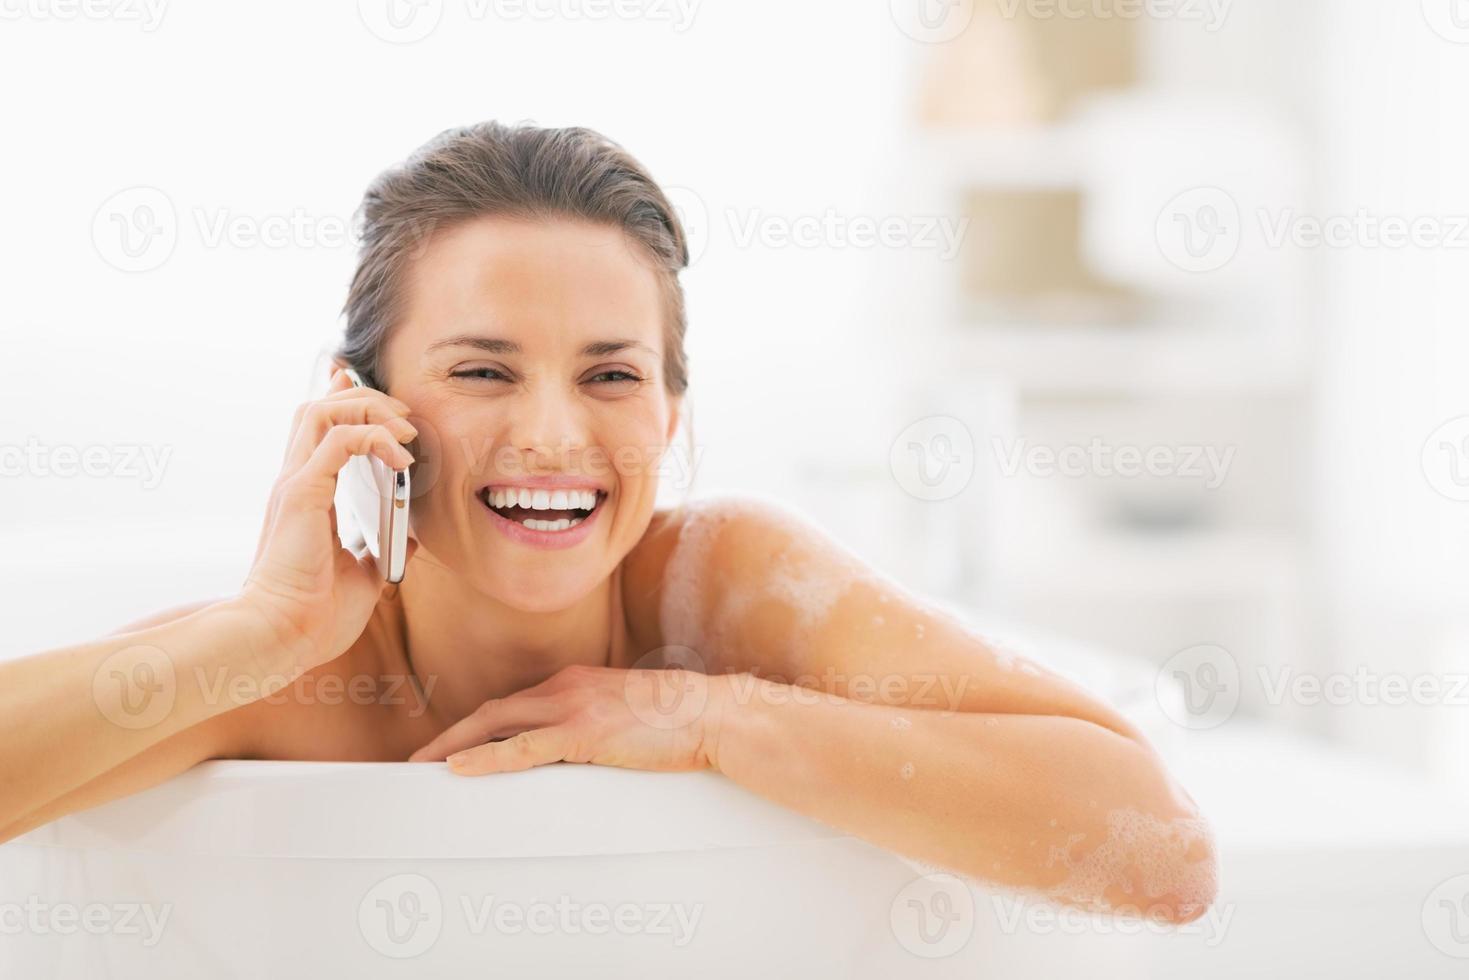 giovane donna sorridente che parla sul telefono cellulare in vasca foto